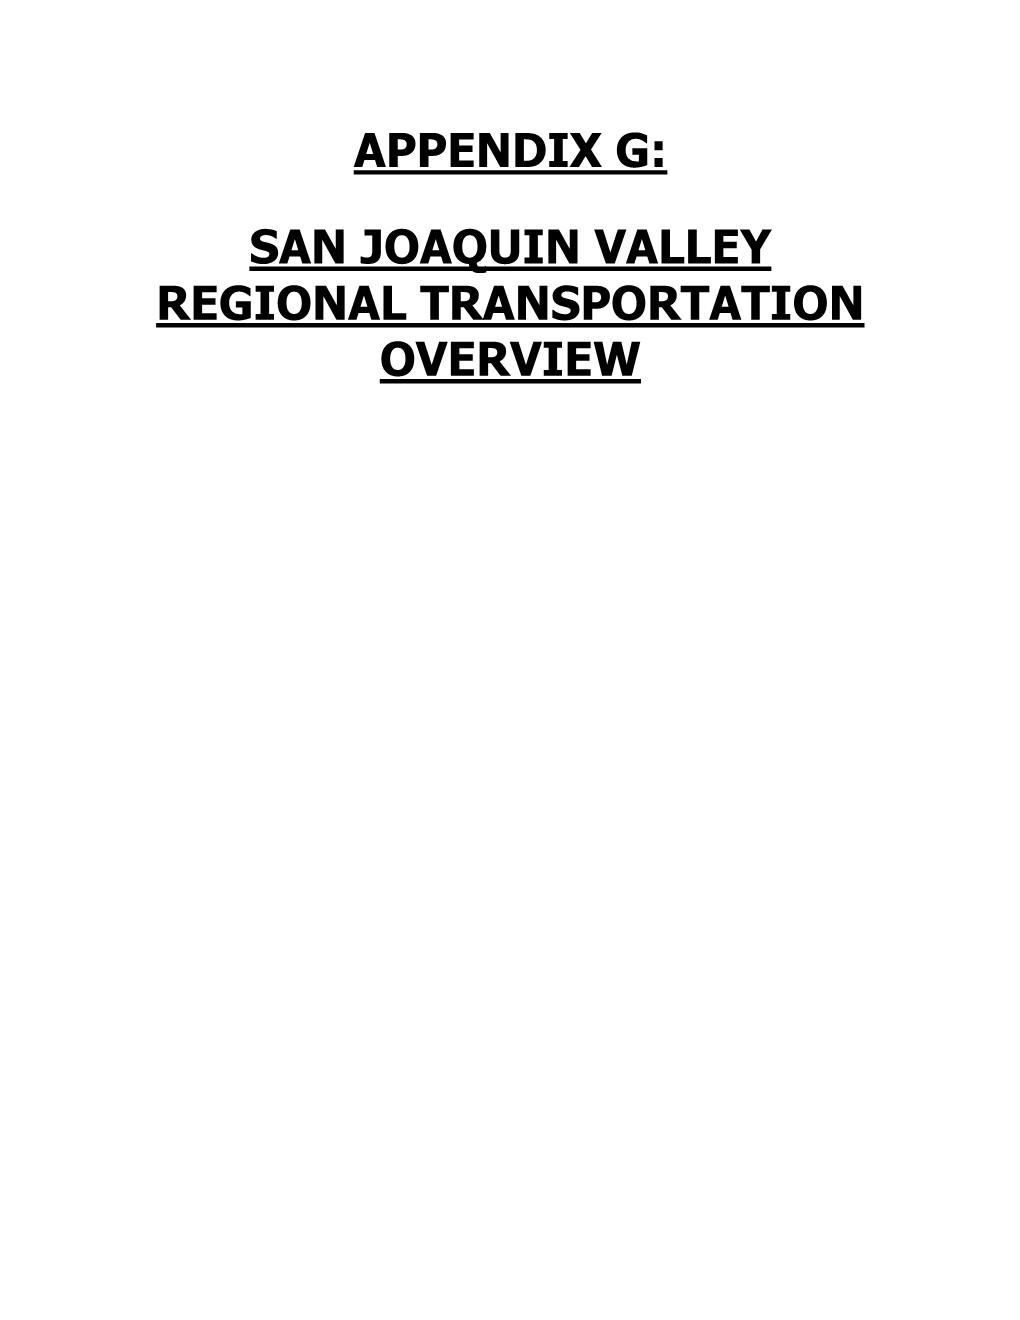 San Joaquin Valley Regional Transportation Overview